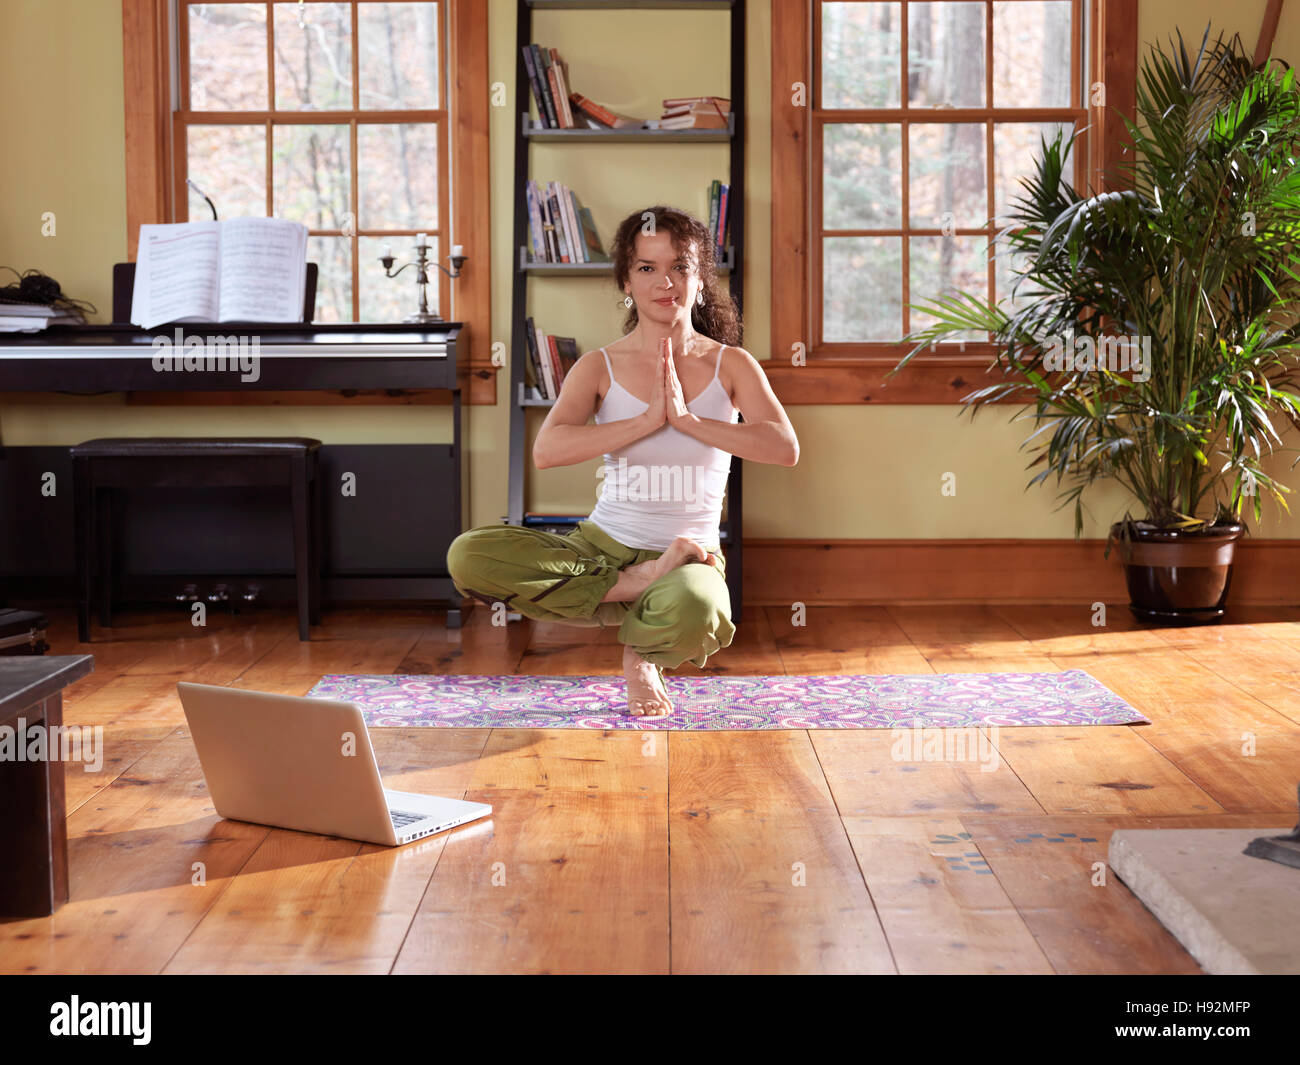 Junge Frau Yoga zu praktizieren, balancieren auf einem Bein zu Hause im Wohnzimmer mit einem Laptop an ihrer Seite Stockfoto